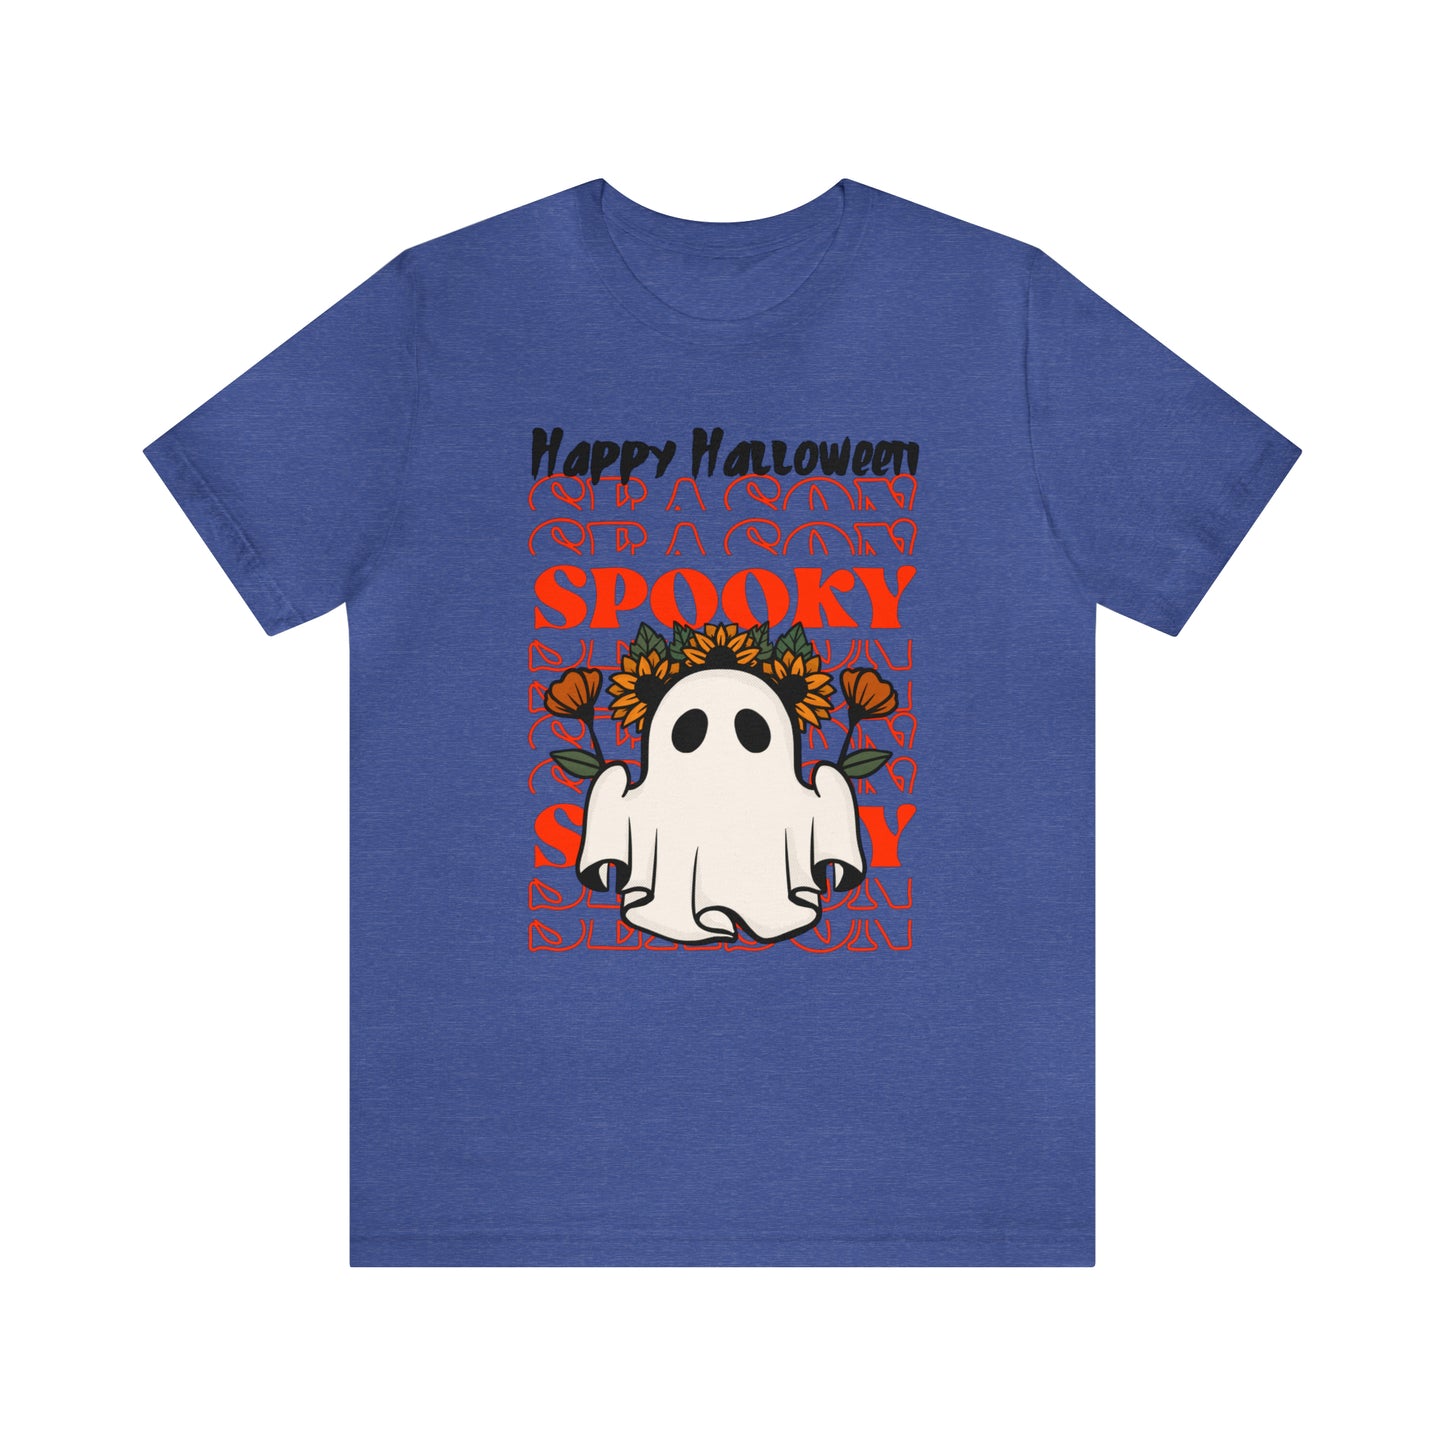 Unisex Jersey Short Sleeve Tee - Halloween - Little Ghost - 11